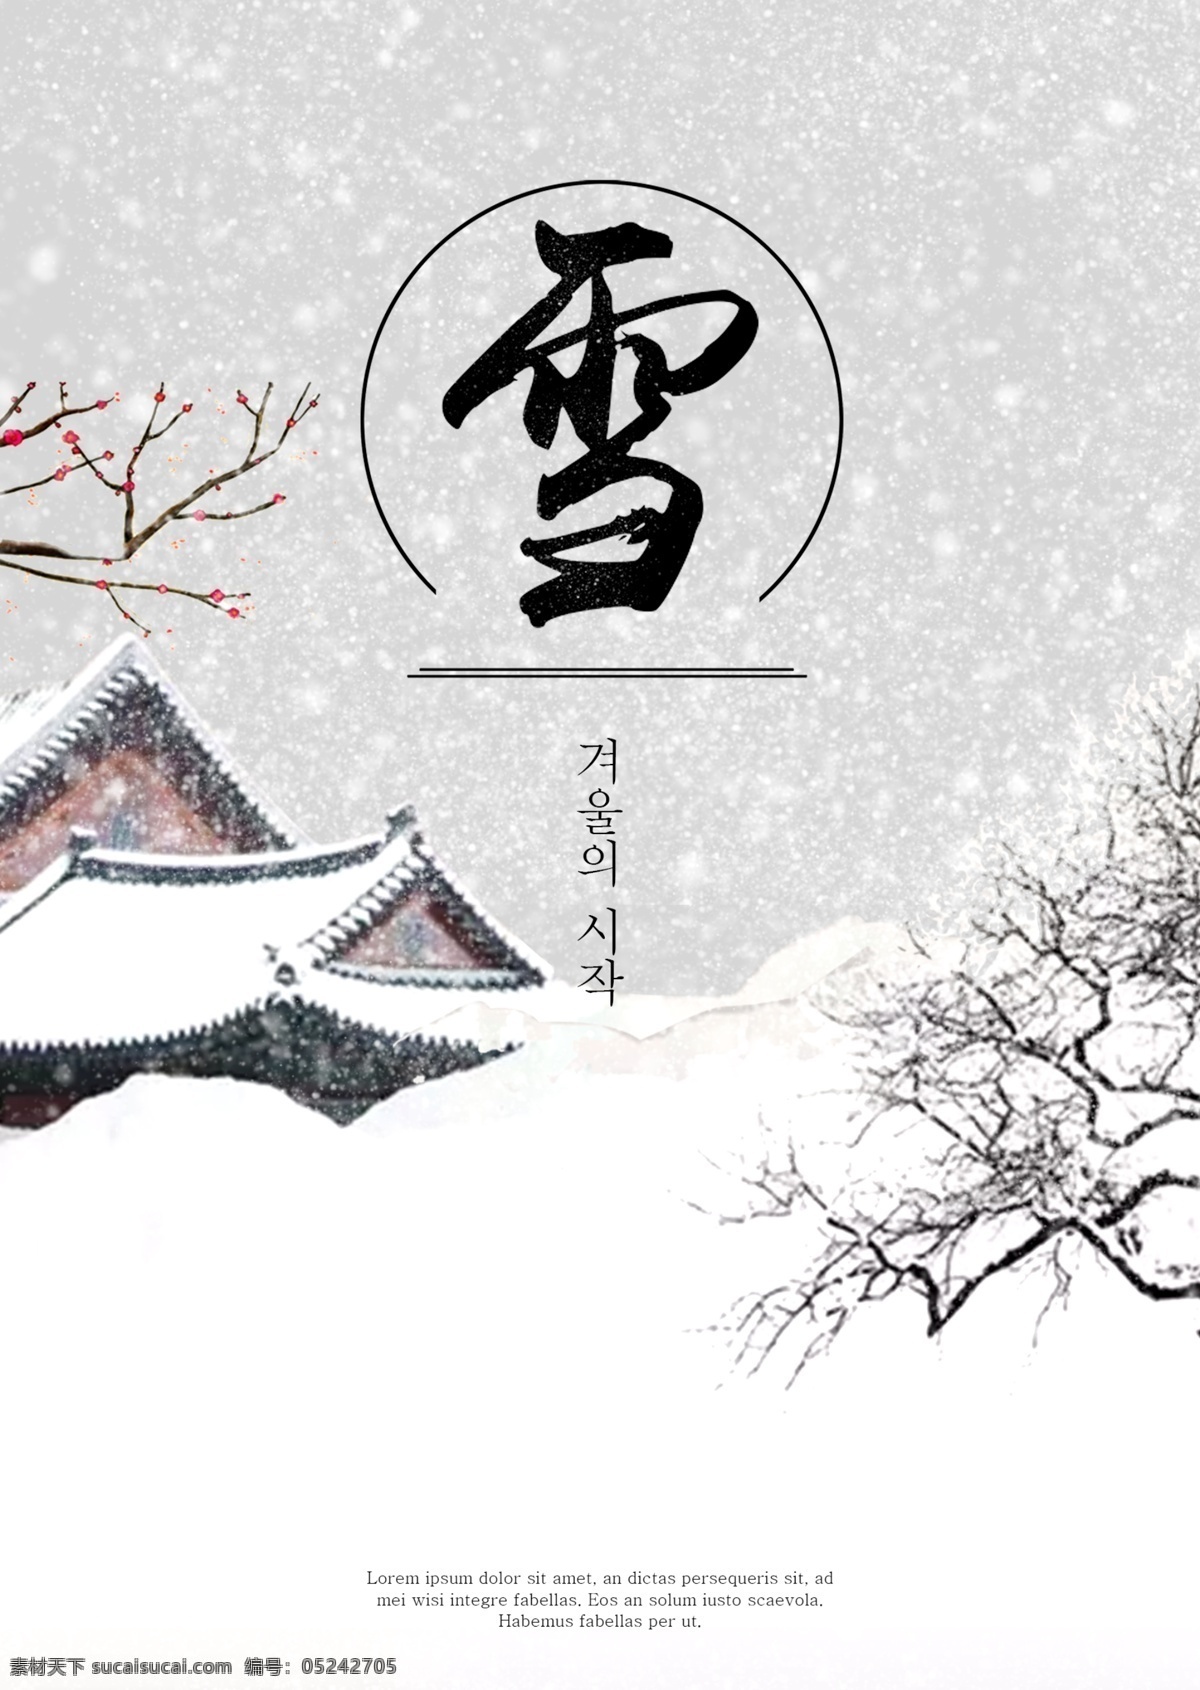 白色 现代 雪景 海报 花枝 遥远 中文 冰雪 覆盖 景观 松树 灰色 墨 简单 山 树木 天空 冬季 空